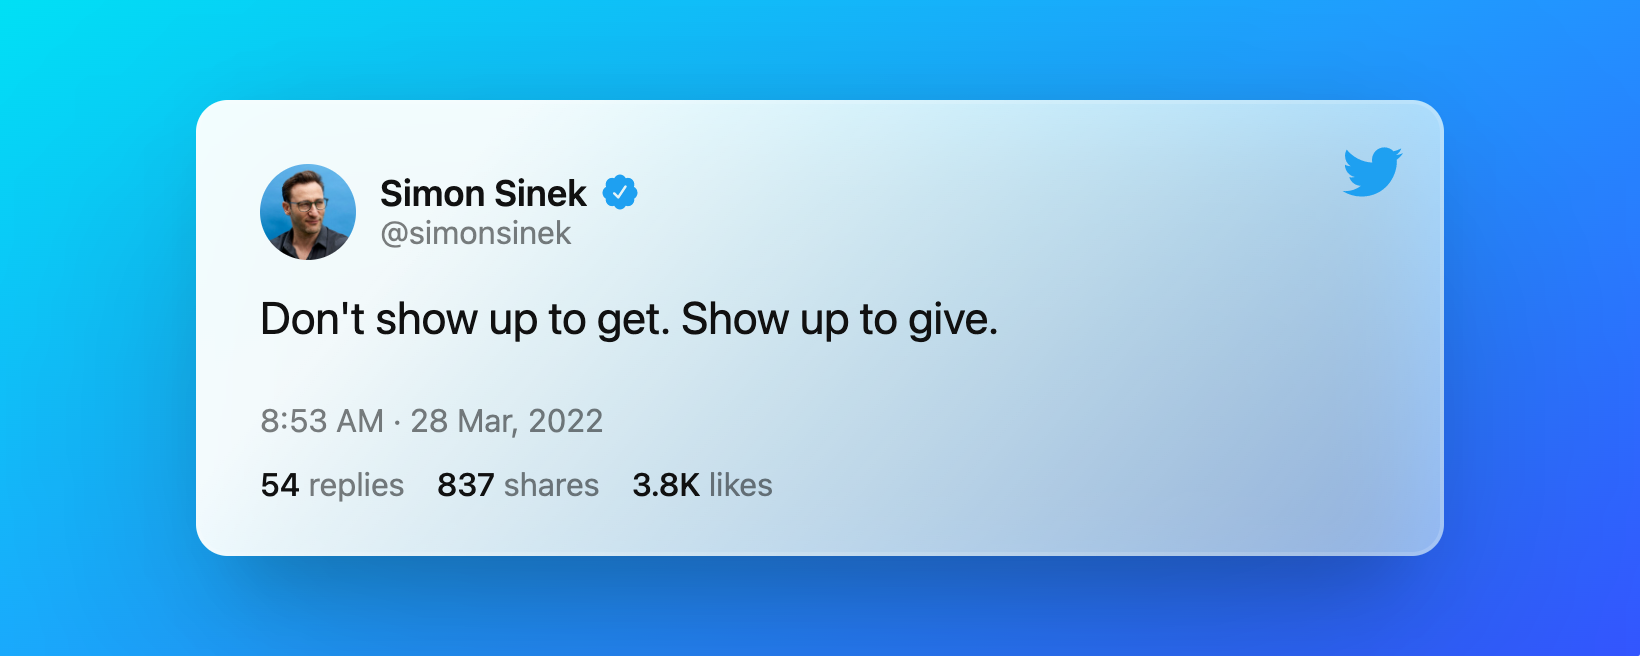 Simon Sineky tweet on perseverance